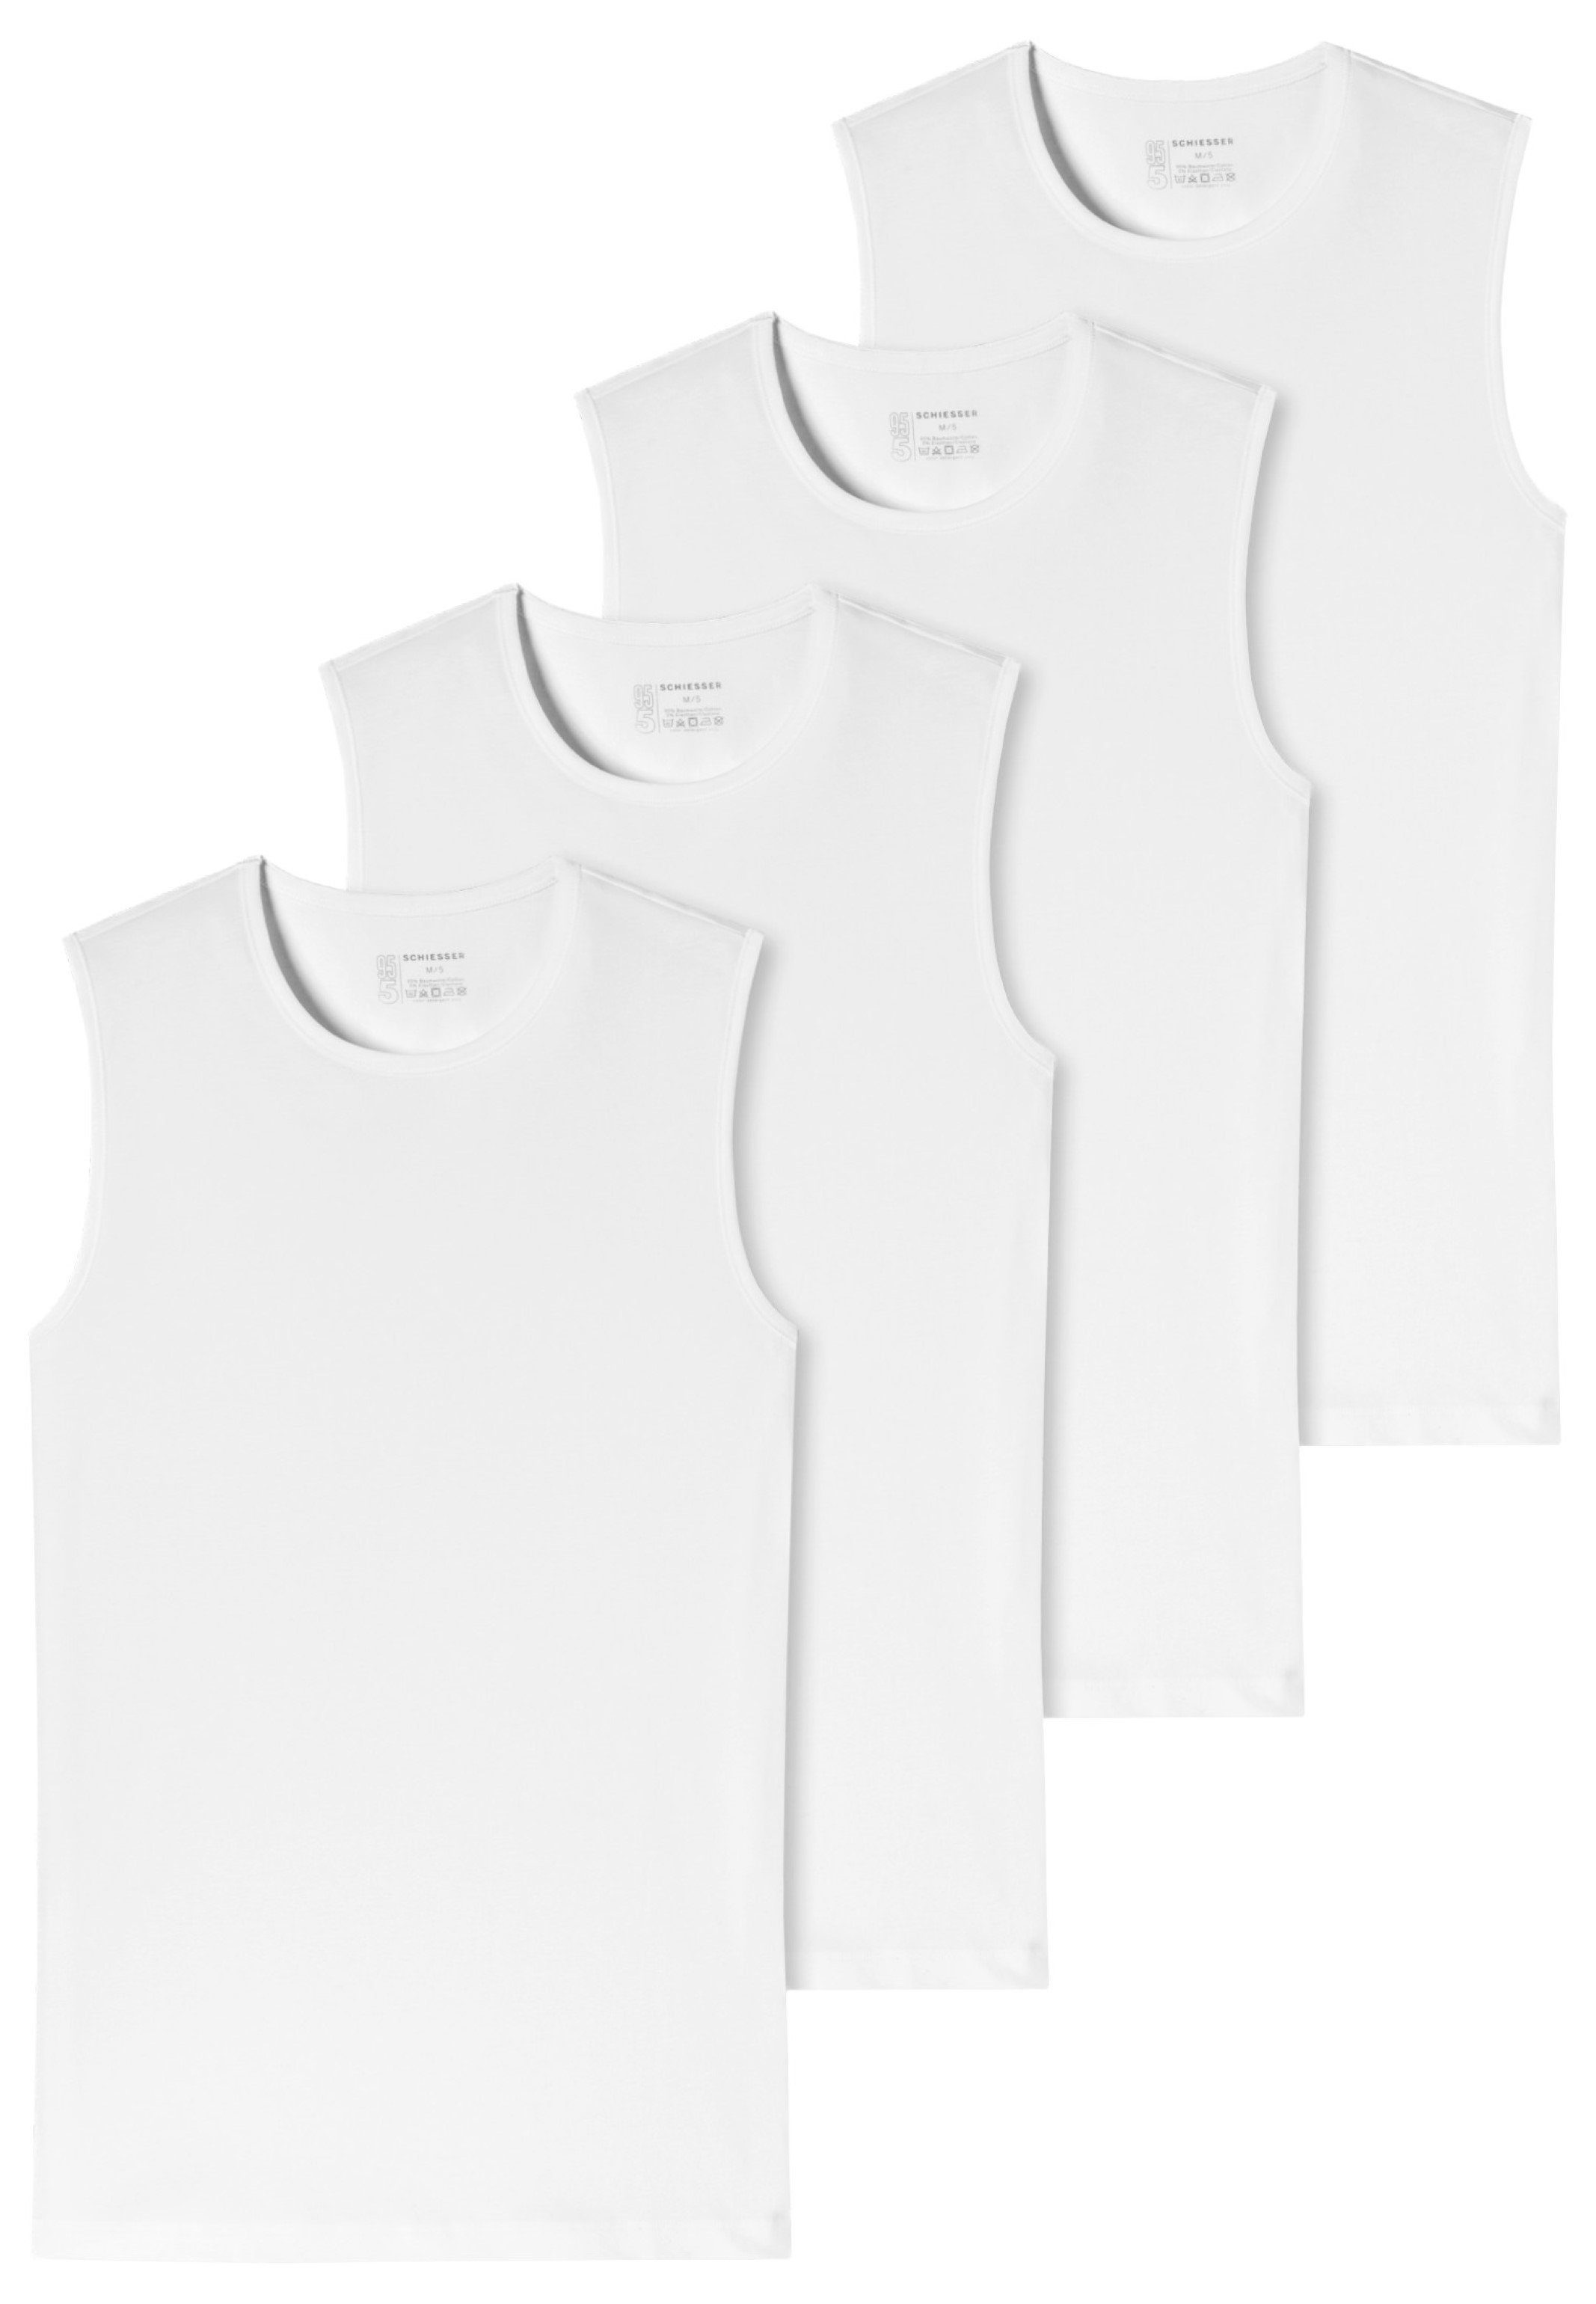 Tanktop Schiesser 95/5 Baumwolle Unterhemd Weiß / - Organic - Unterhemd (Spar-Set, - Komfortabler - 4-St) Rundhalsausschnitt Cotton 4er-Pack